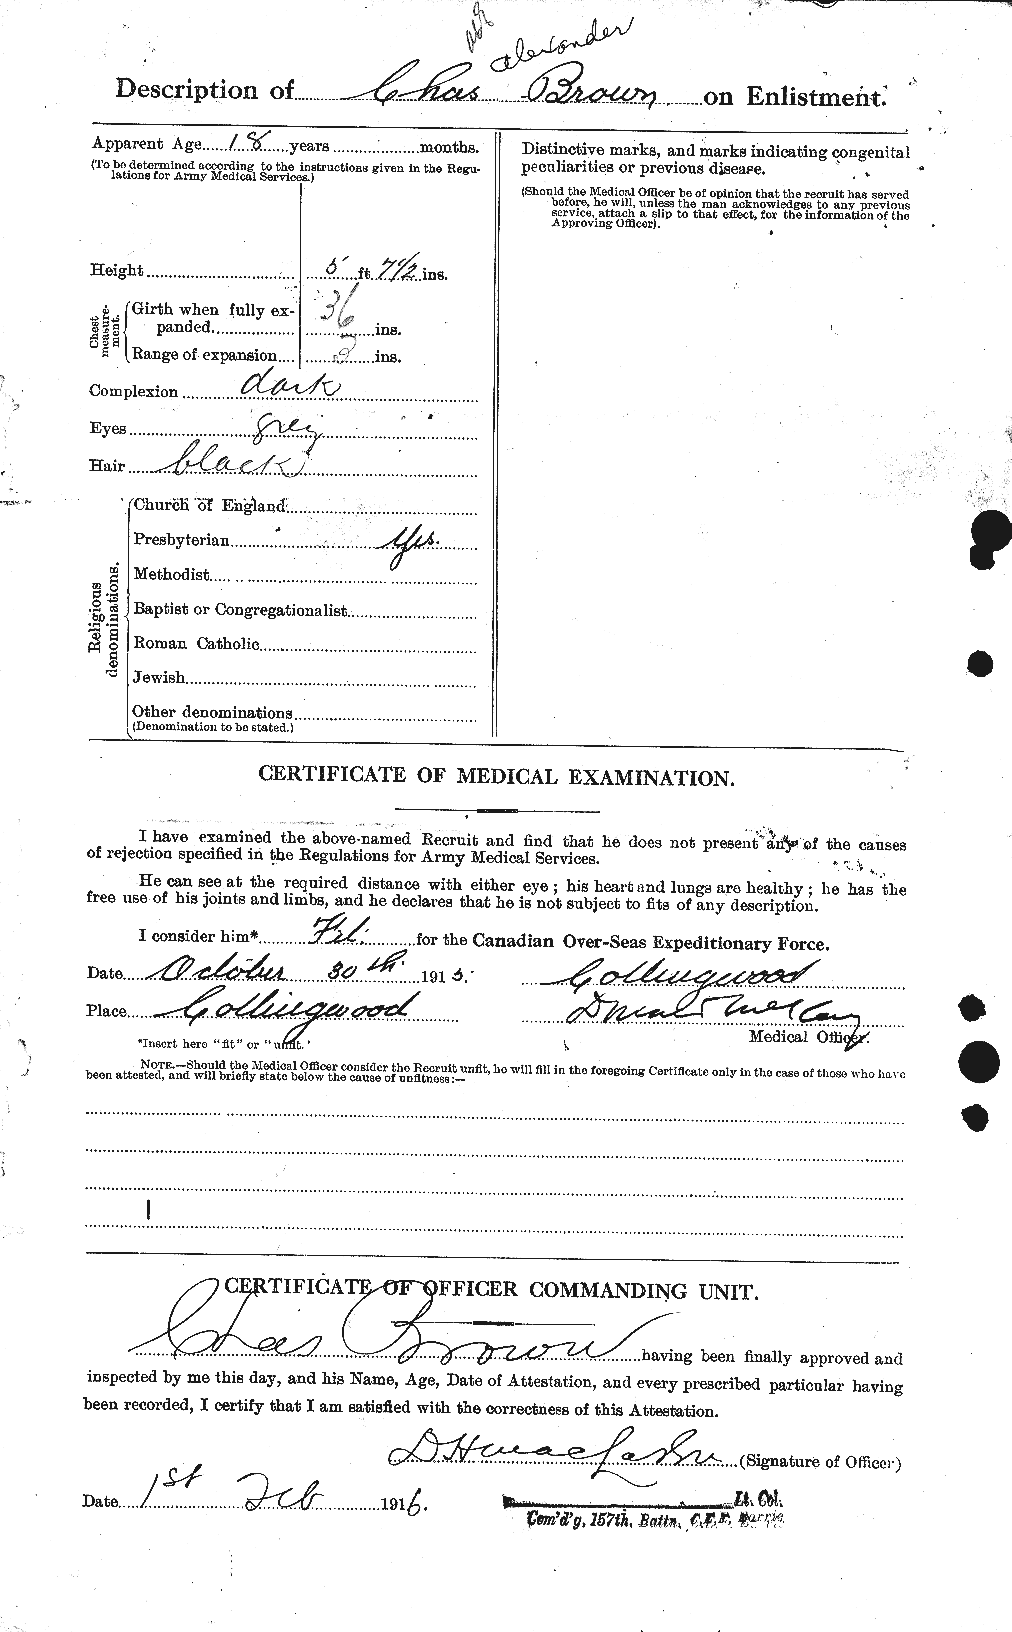 Dossiers du Personnel de la Première Guerre mondiale - CEC 264382b